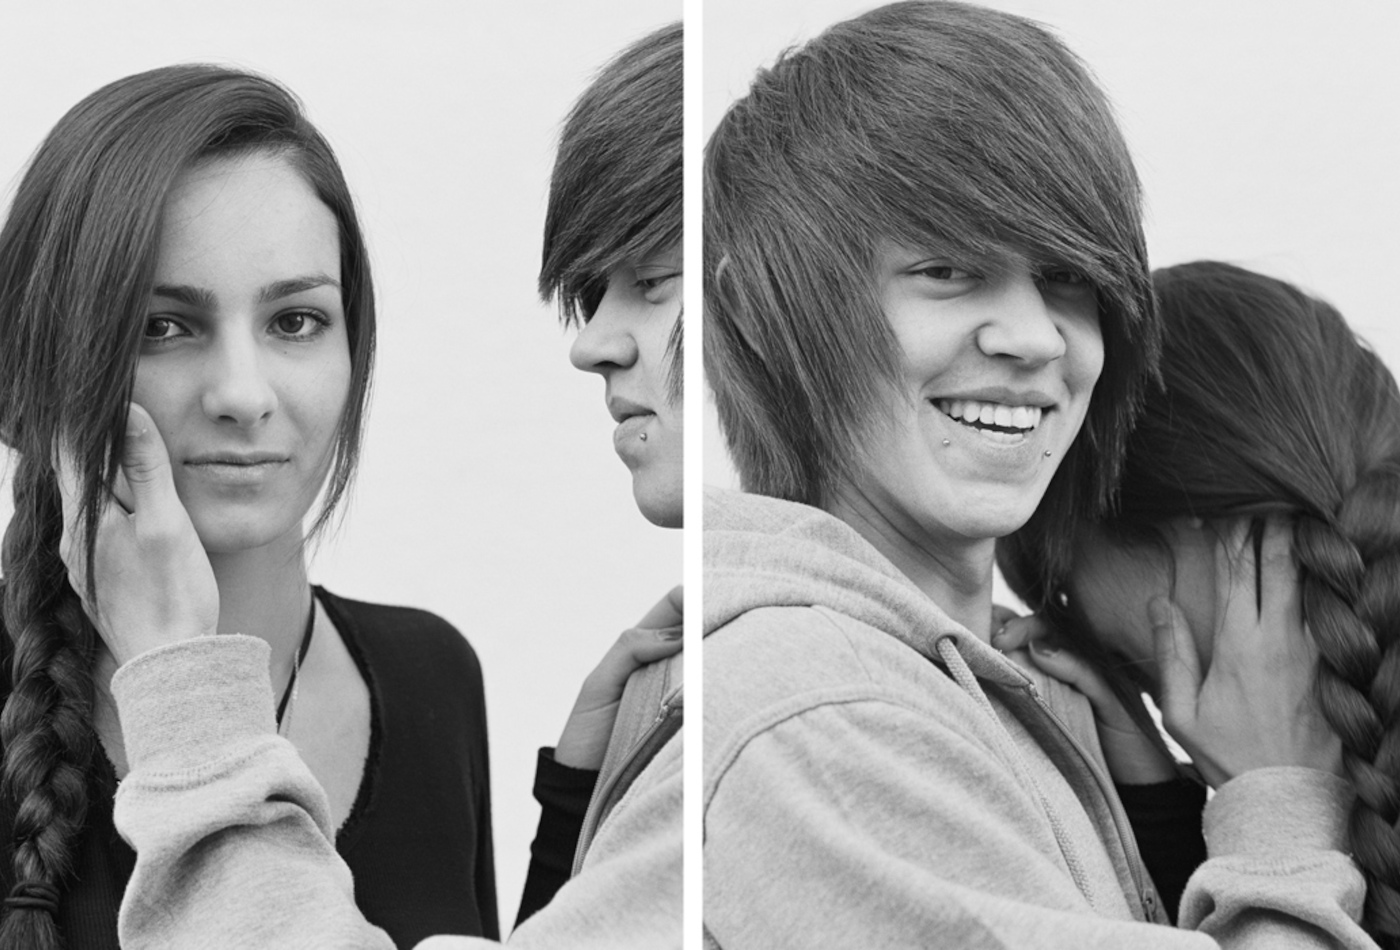 Die schwarz-weiß Fotografie ist zweigeteilt und zeigt zwei junge glücklich wirkende Menschen.